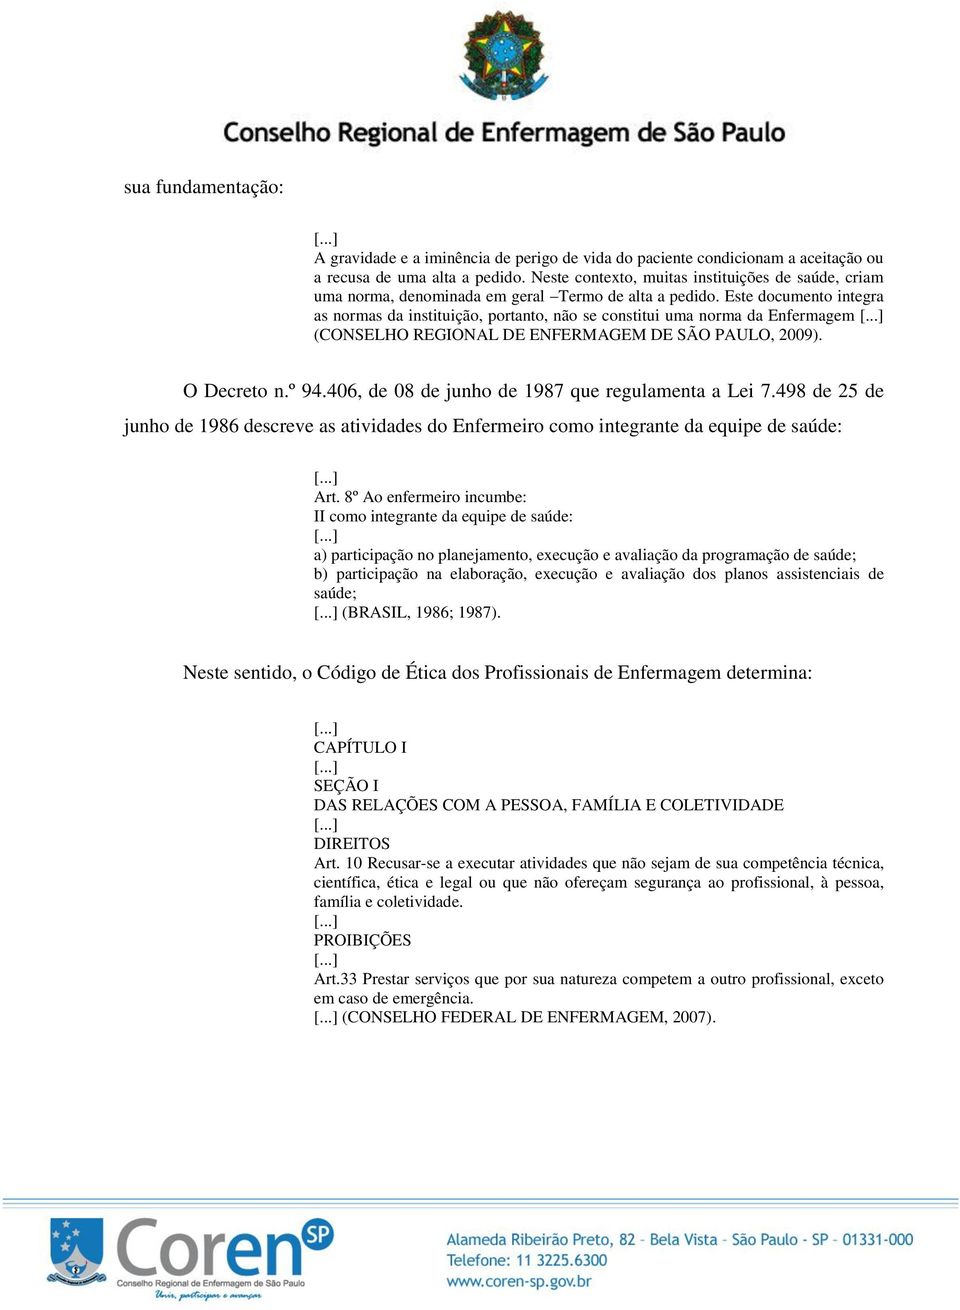 Este documento integra as normas da instituição, portanto, não se constitui uma norma da Enfermagem (CONSELHO REGIONAL DE ENFERMAGEM DE SÃO PAULO, 2009). O Decreto n.º 94.